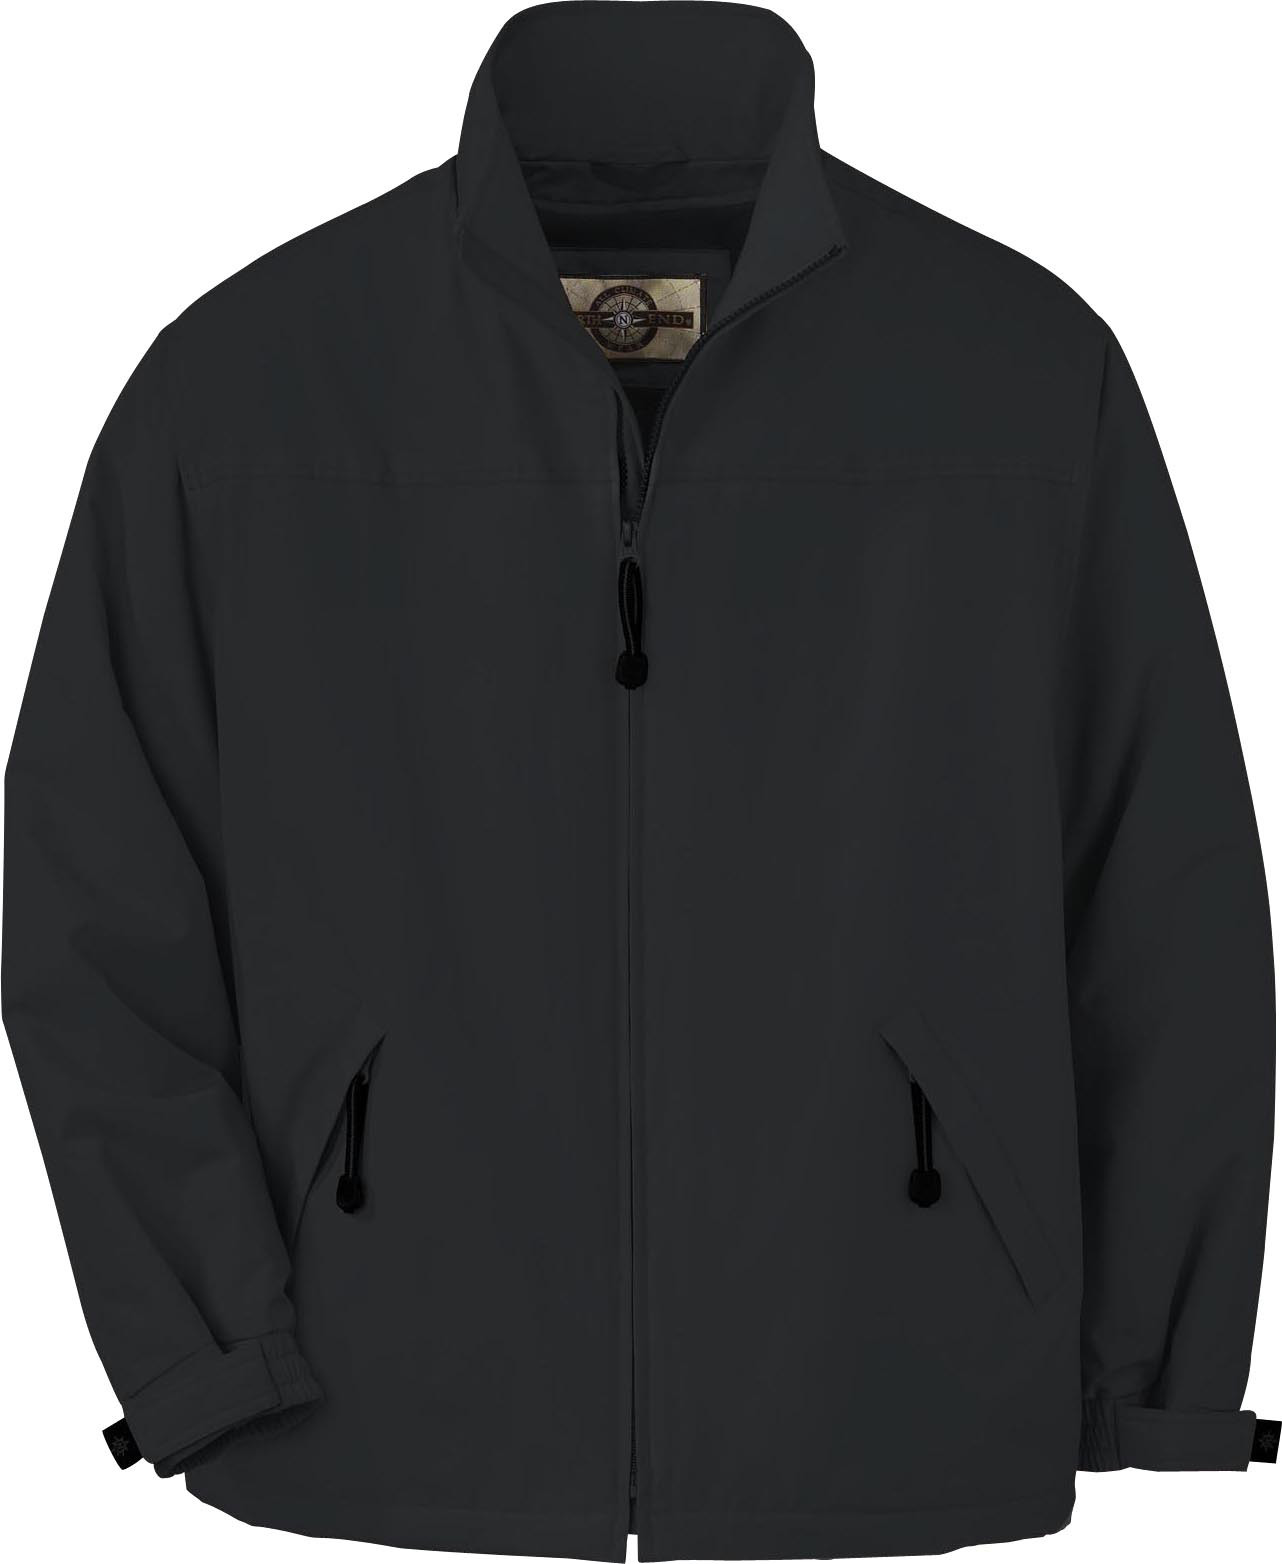 Ash City UTK 2 Warm.Logik 88031 - Men's Insulated Mid-Length Jacket